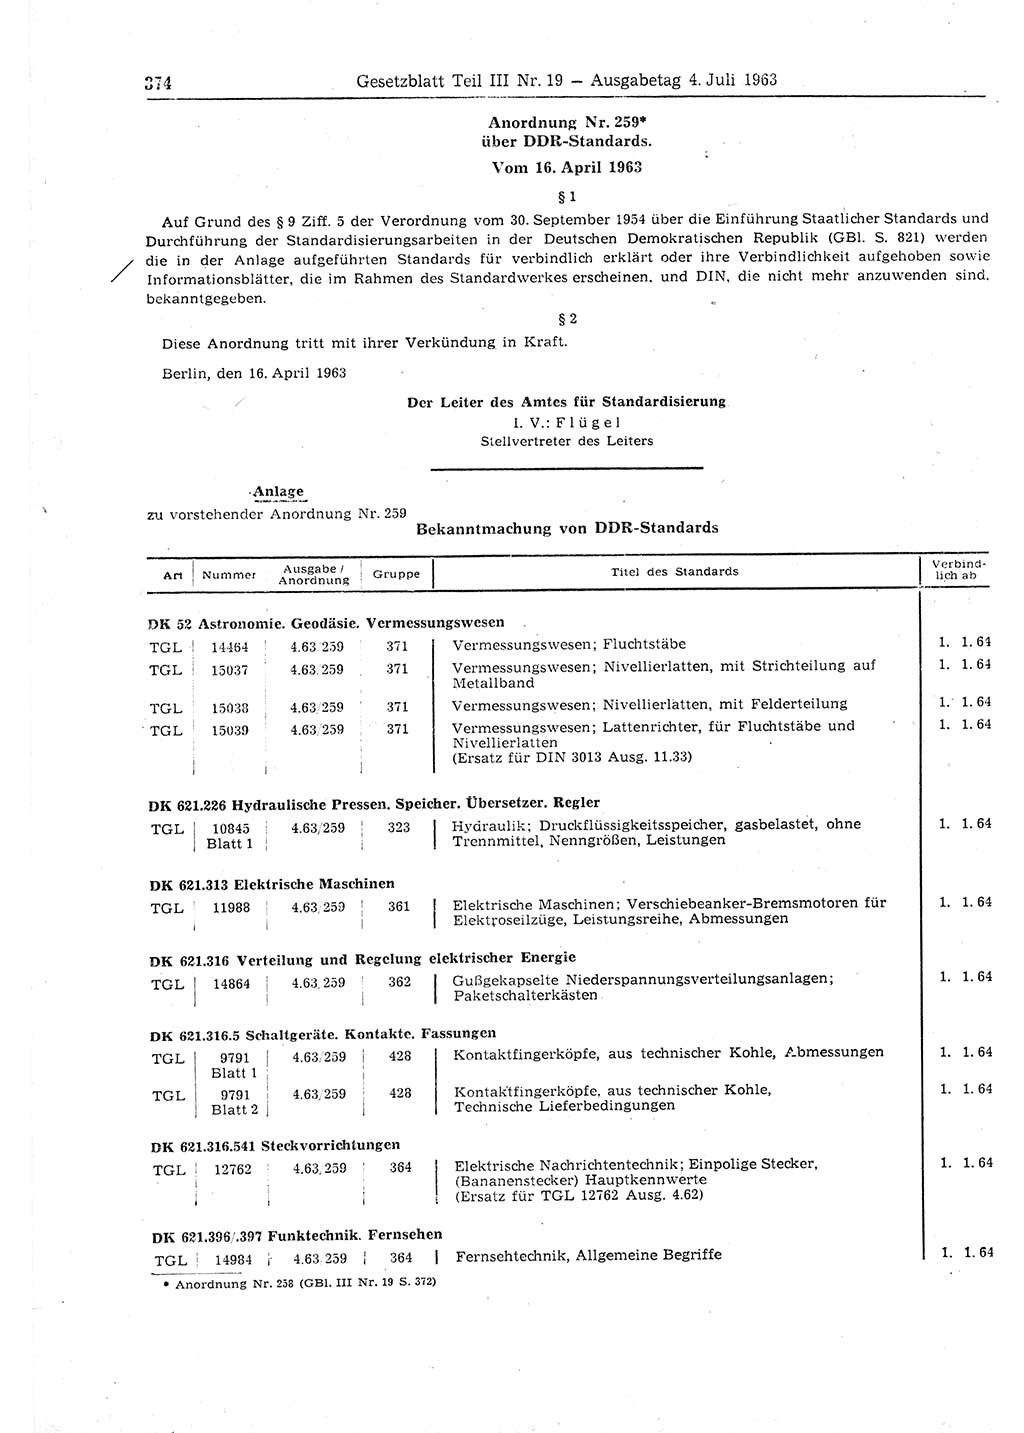 Gesetzblatt (GBl.) der Deutschen Demokratischen Republik (DDR) Teil ⅠⅠⅠ 1963, Seite 374 (GBl. DDR ⅠⅠⅠ 1963, S. 374)